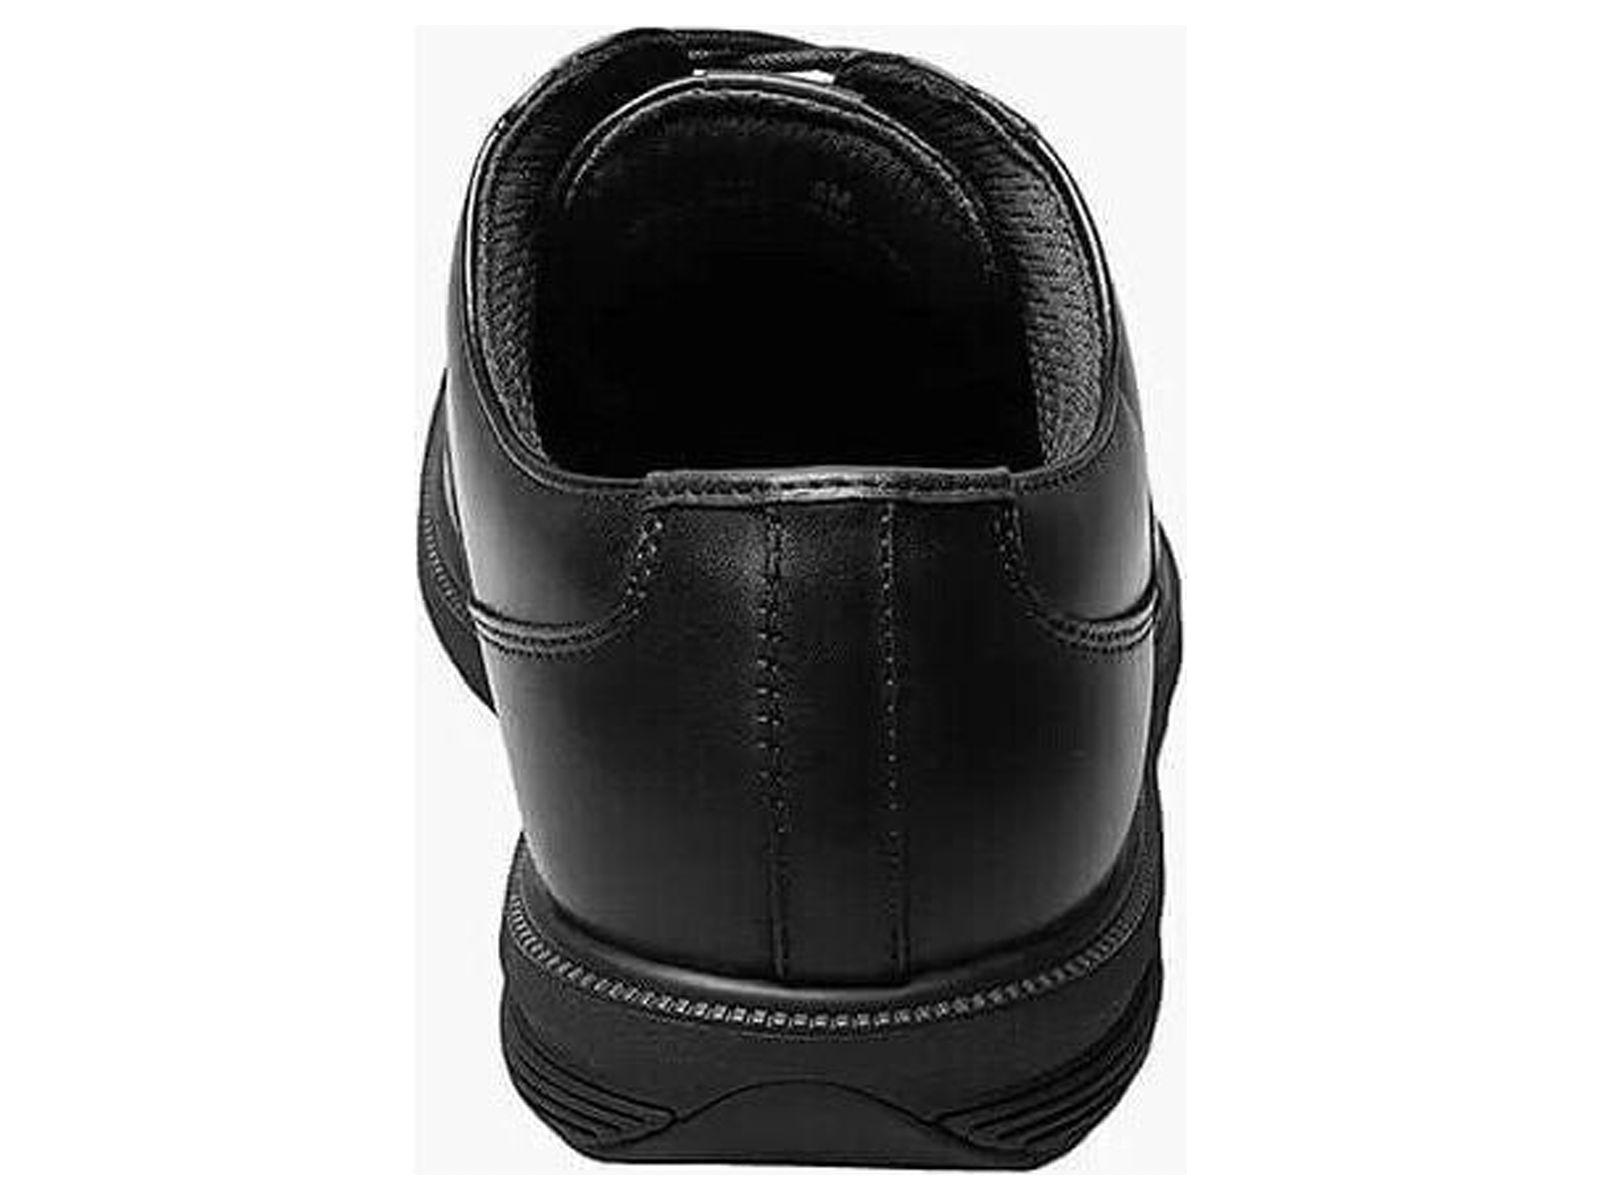 Nunn Bush Marvin Street Plain Toe Oxford Shoes Kore Leather Black 84715-001 - image 2 of 7